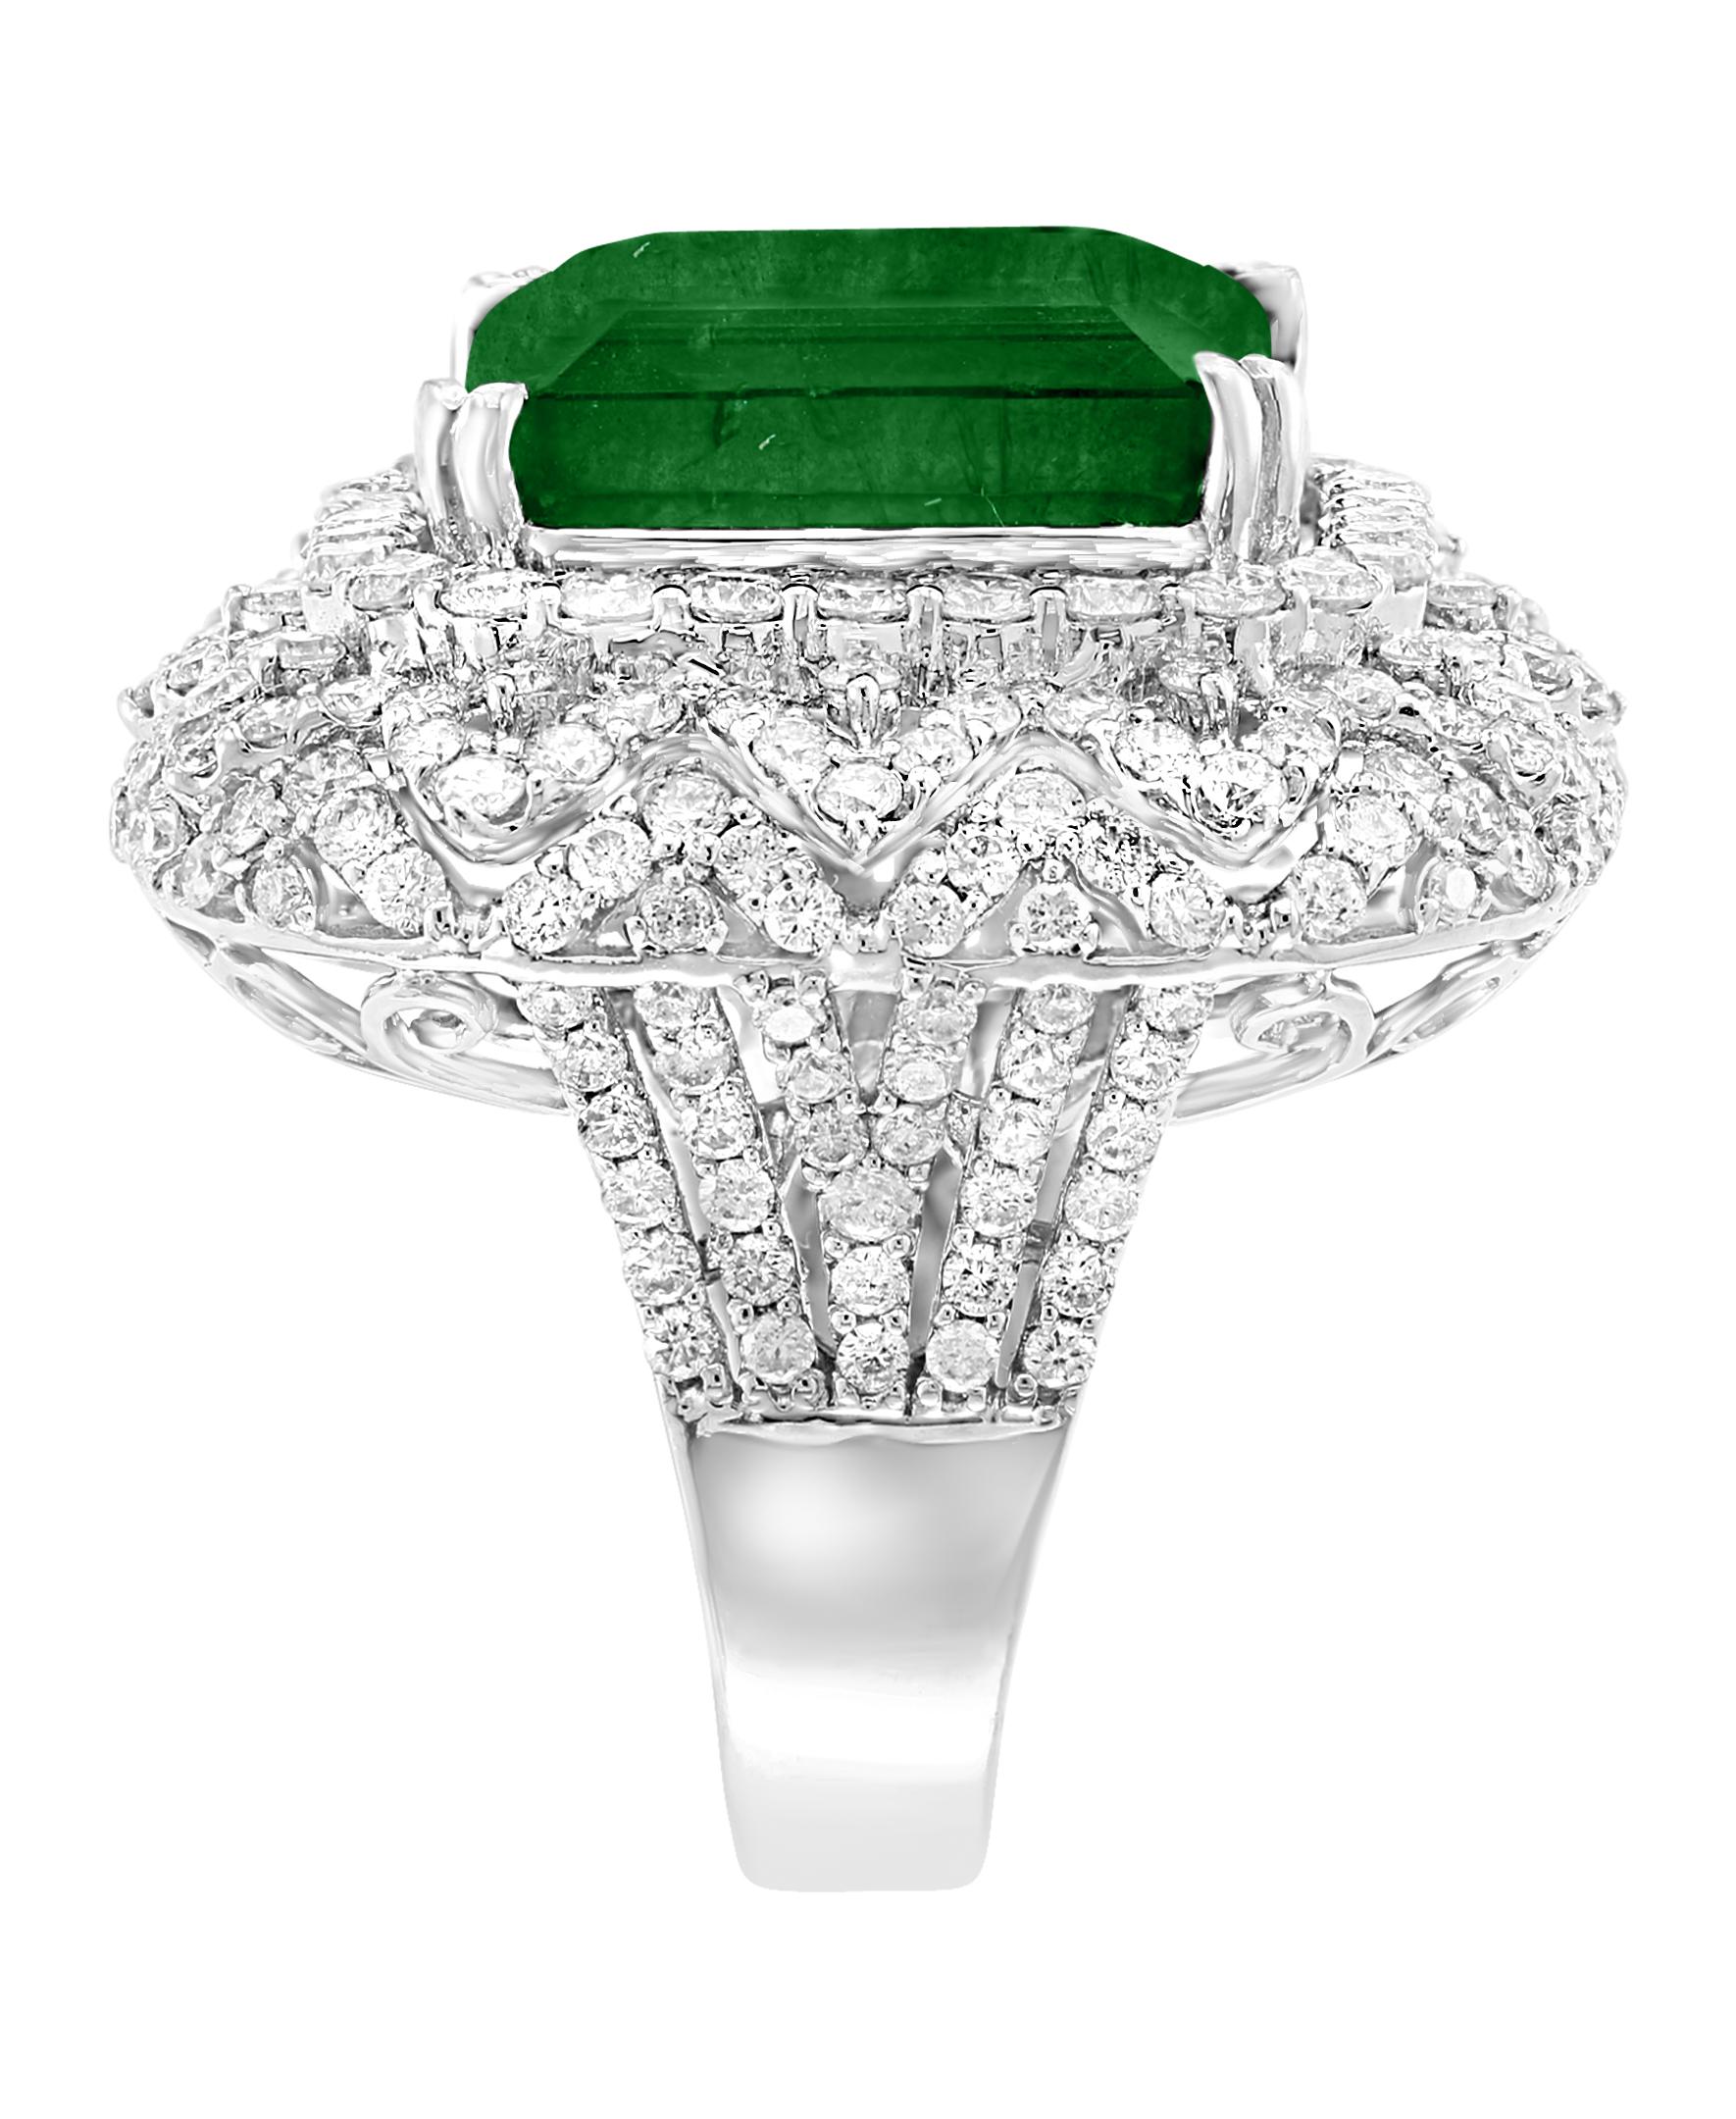  13.62 Carat  Emerald Cut  Emerald And 4.5 Carat Diamond 18K Gold Cocktail Ring  1